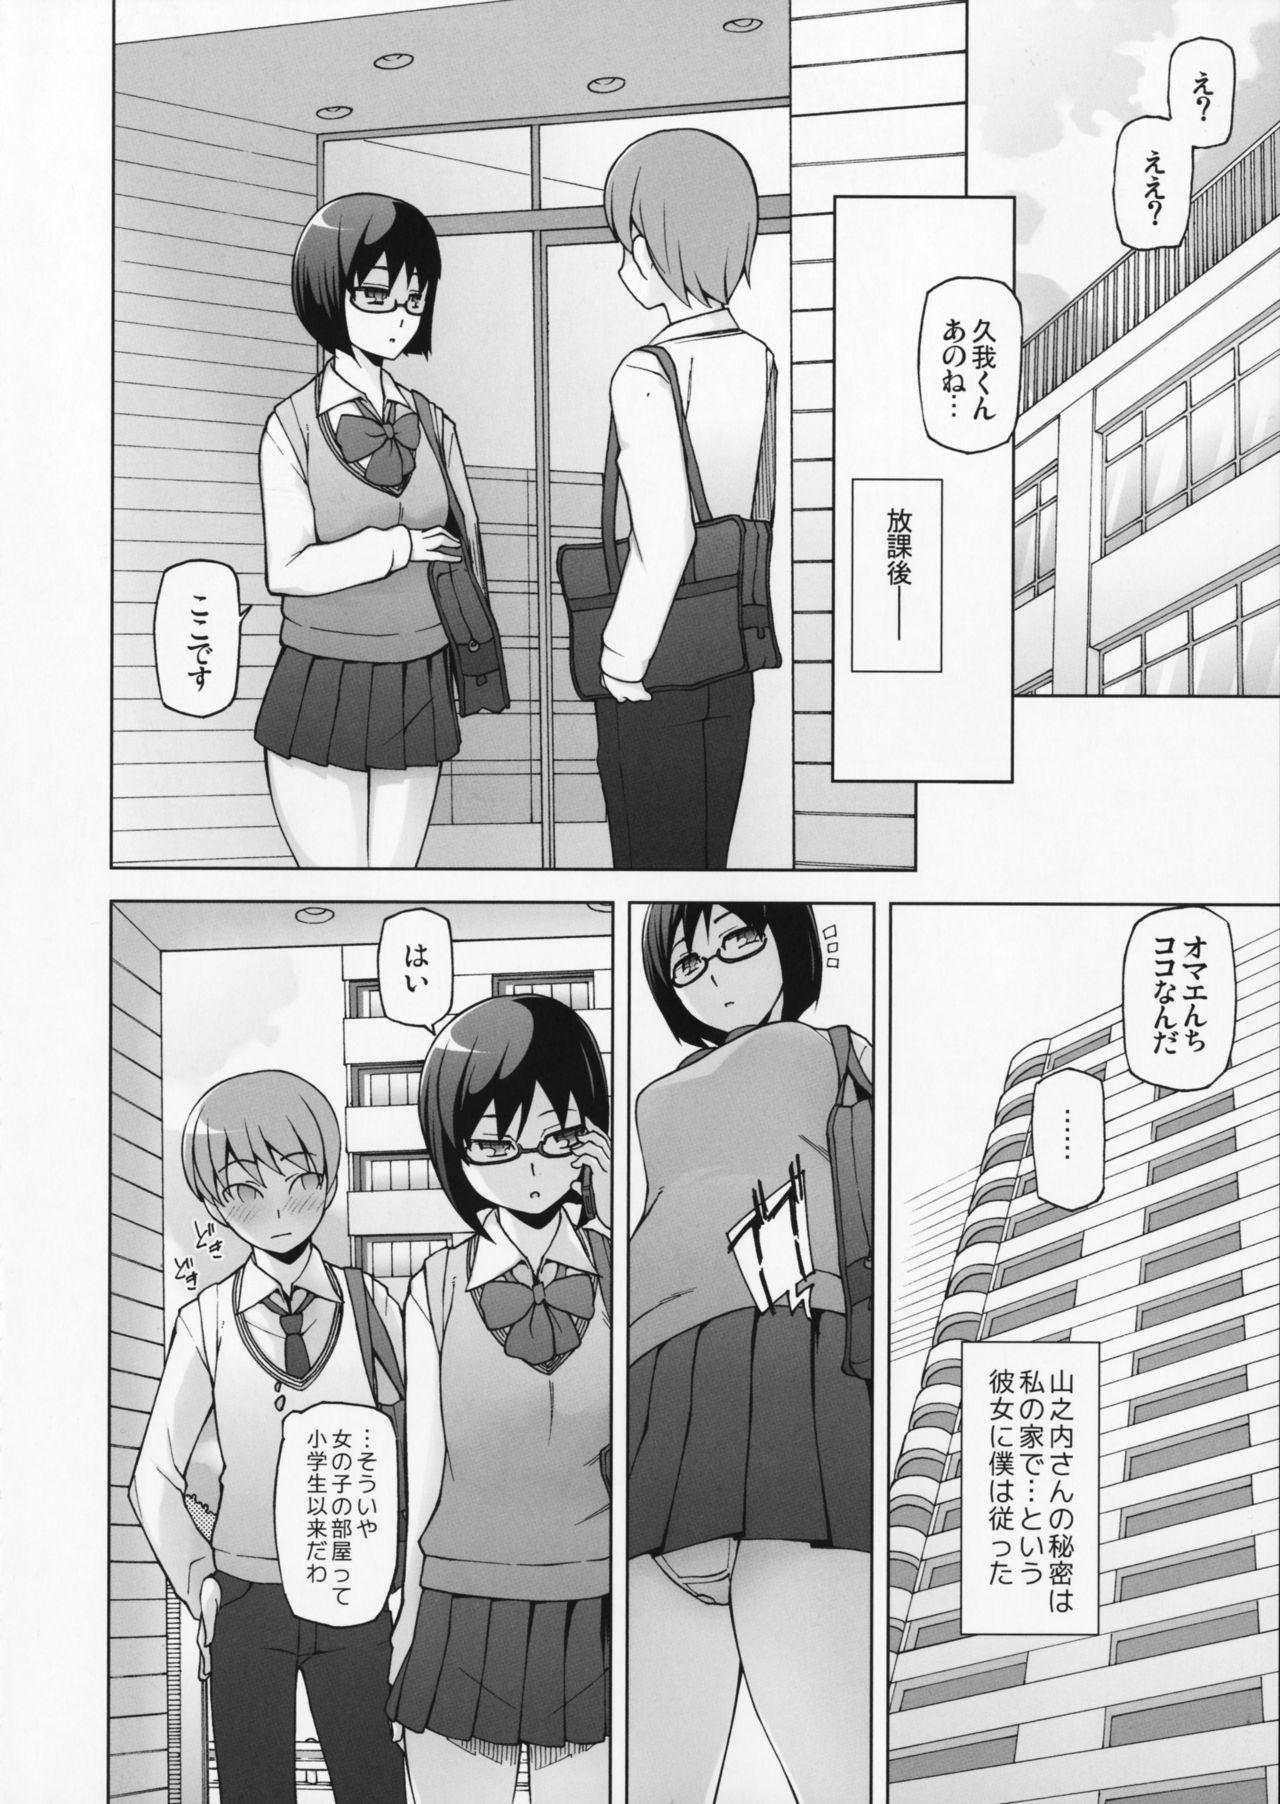 18yo Lustful Flowers Toumei na Kanojo wa, Yoru ni Saku Hana. Hidden Cam - Page 7